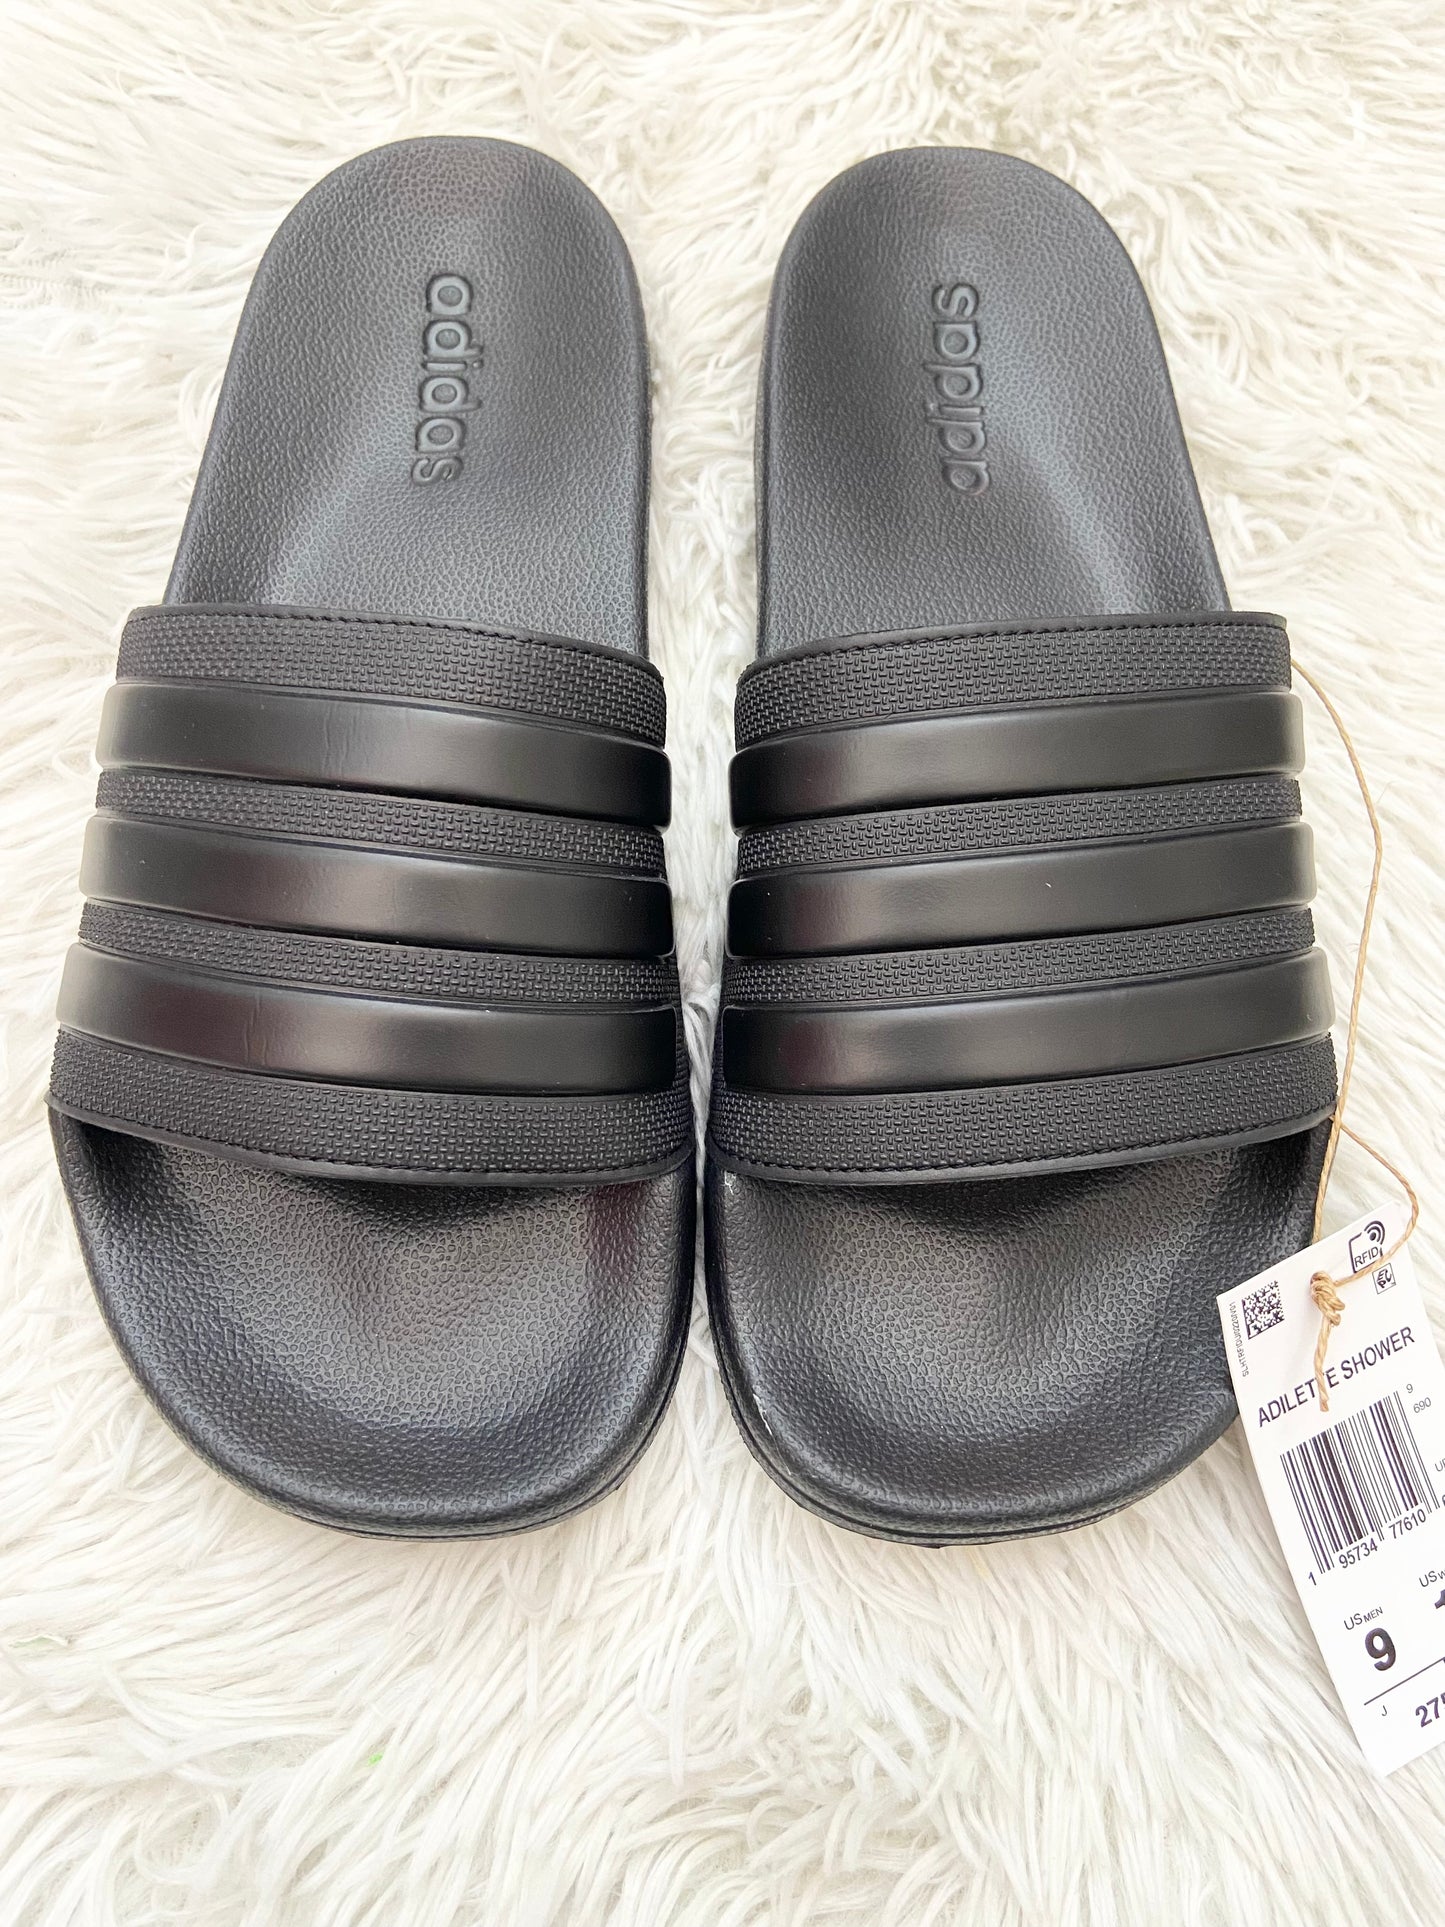 Sandalias Adidas original negra lisa con líneas en color negro en frente y letras ADIDAS al lado.